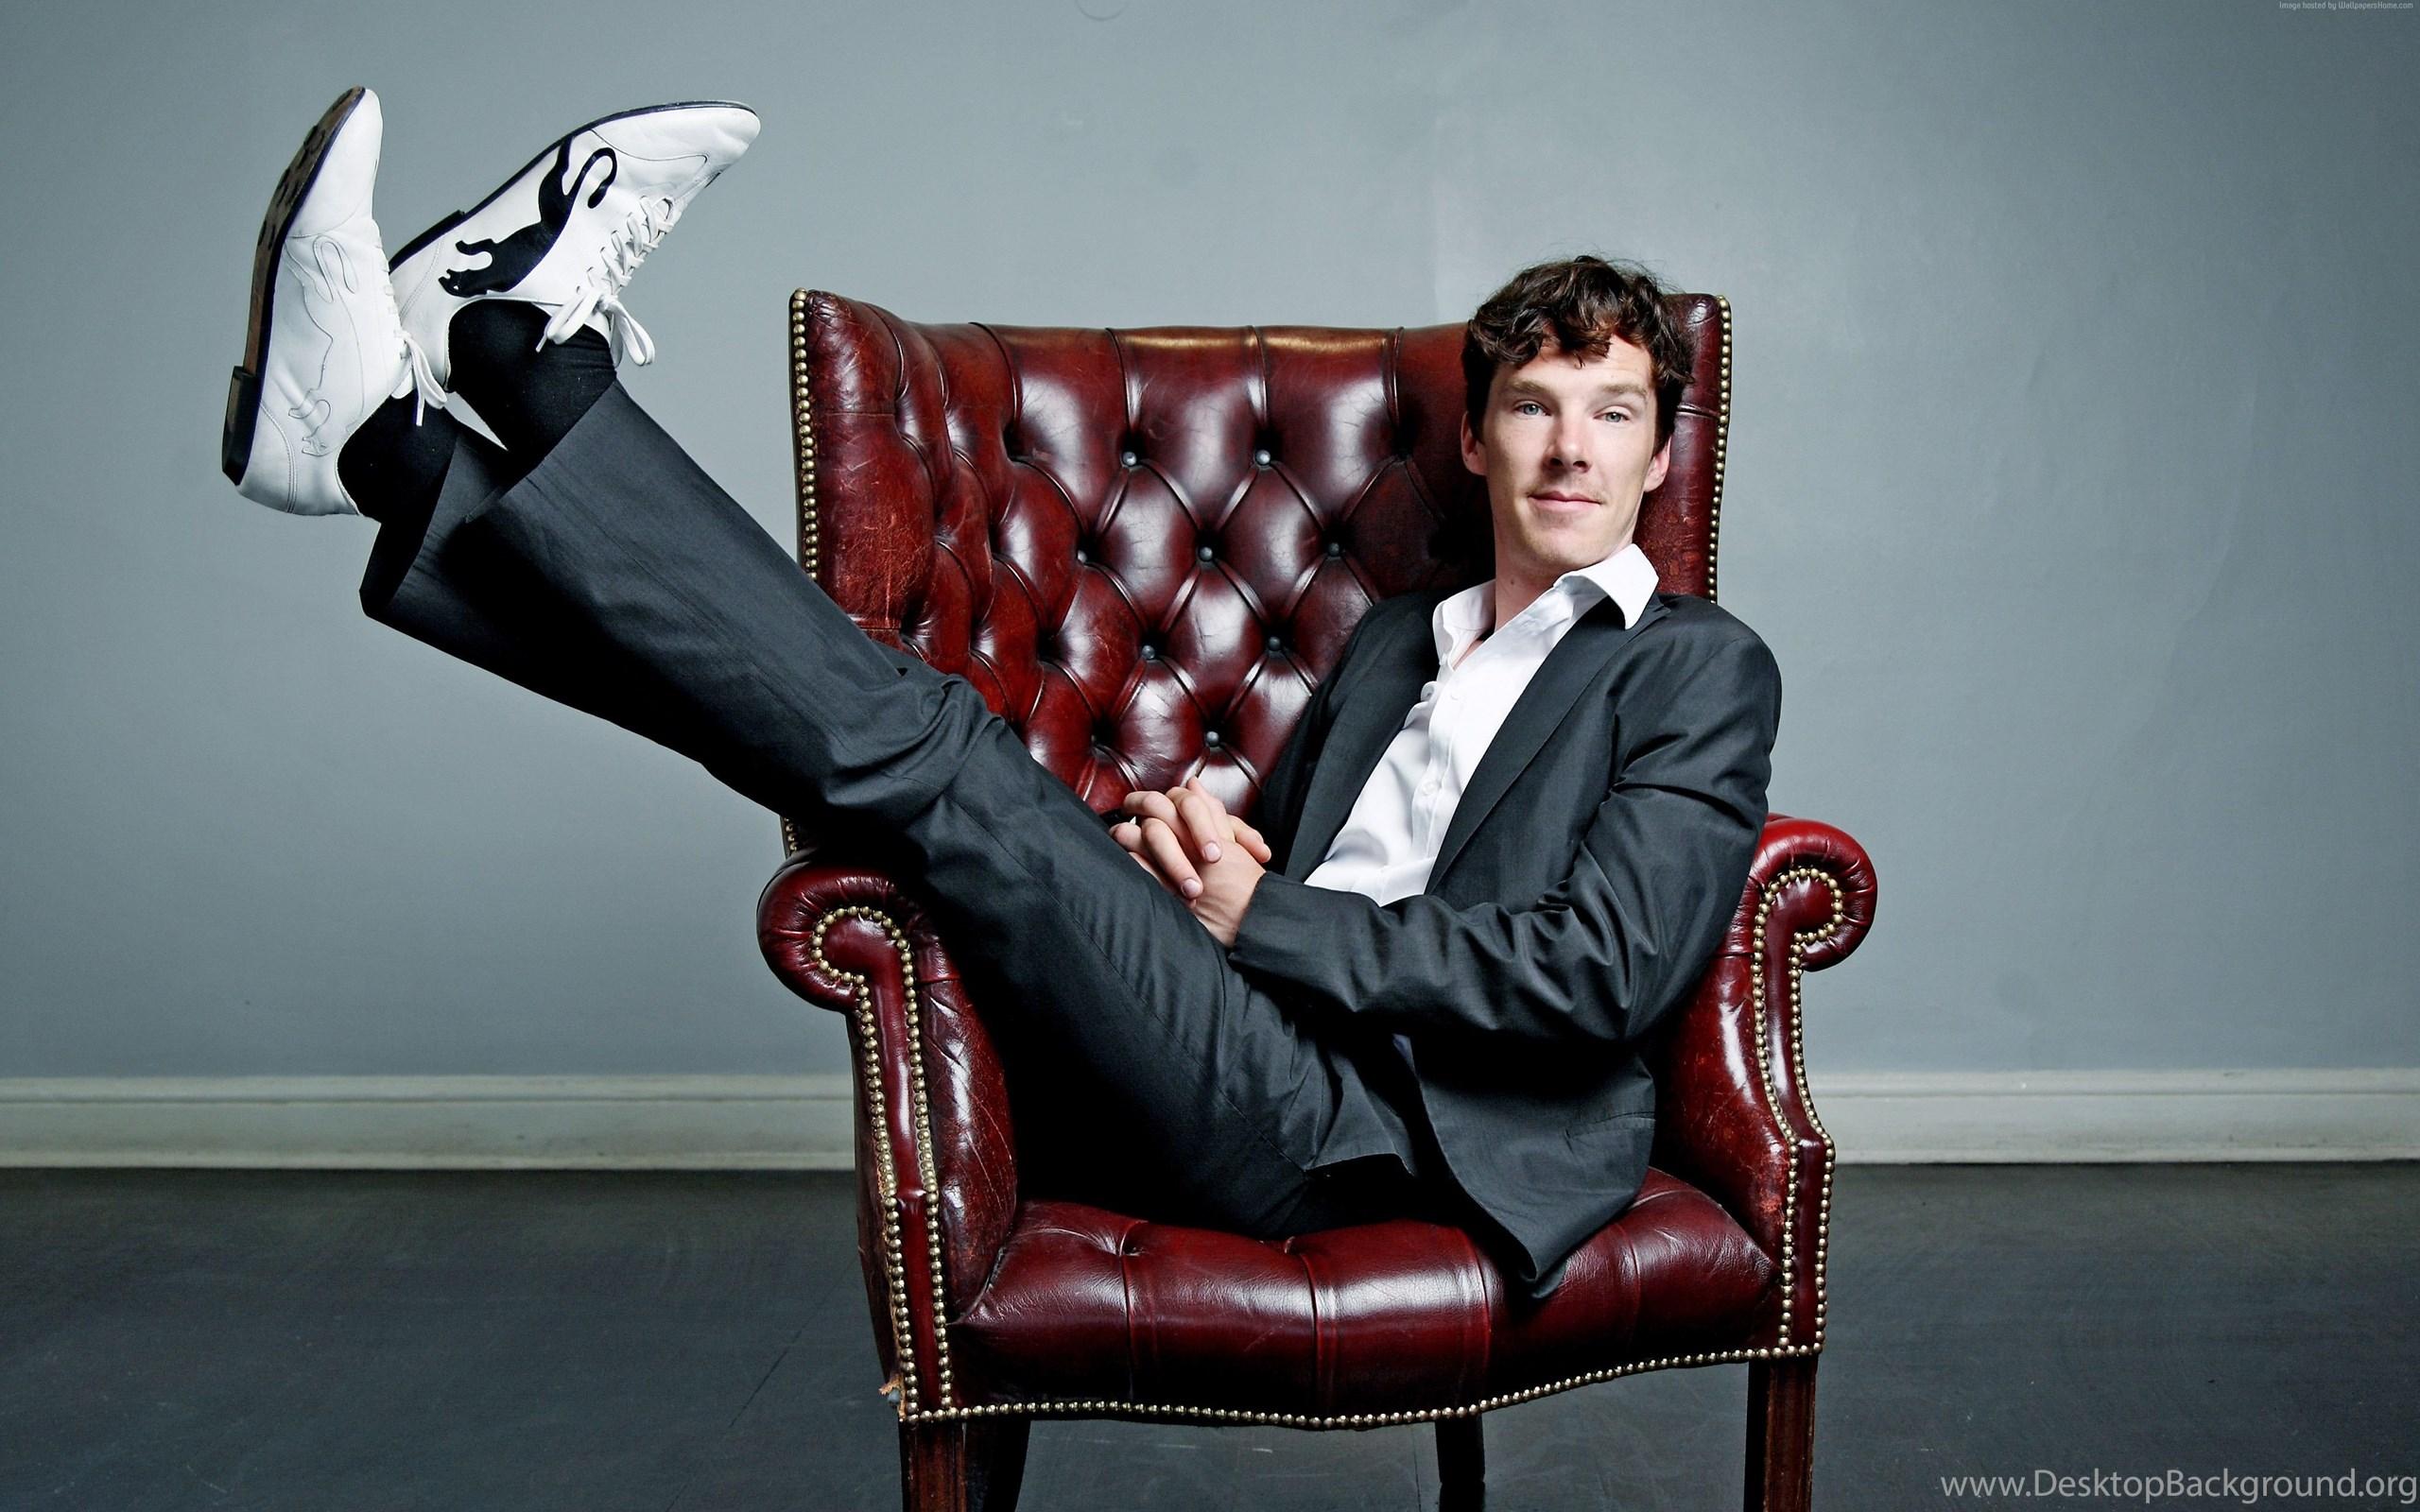 Benedict Cumberbatch Wallpaper, Celebrities / Recent: Benedict